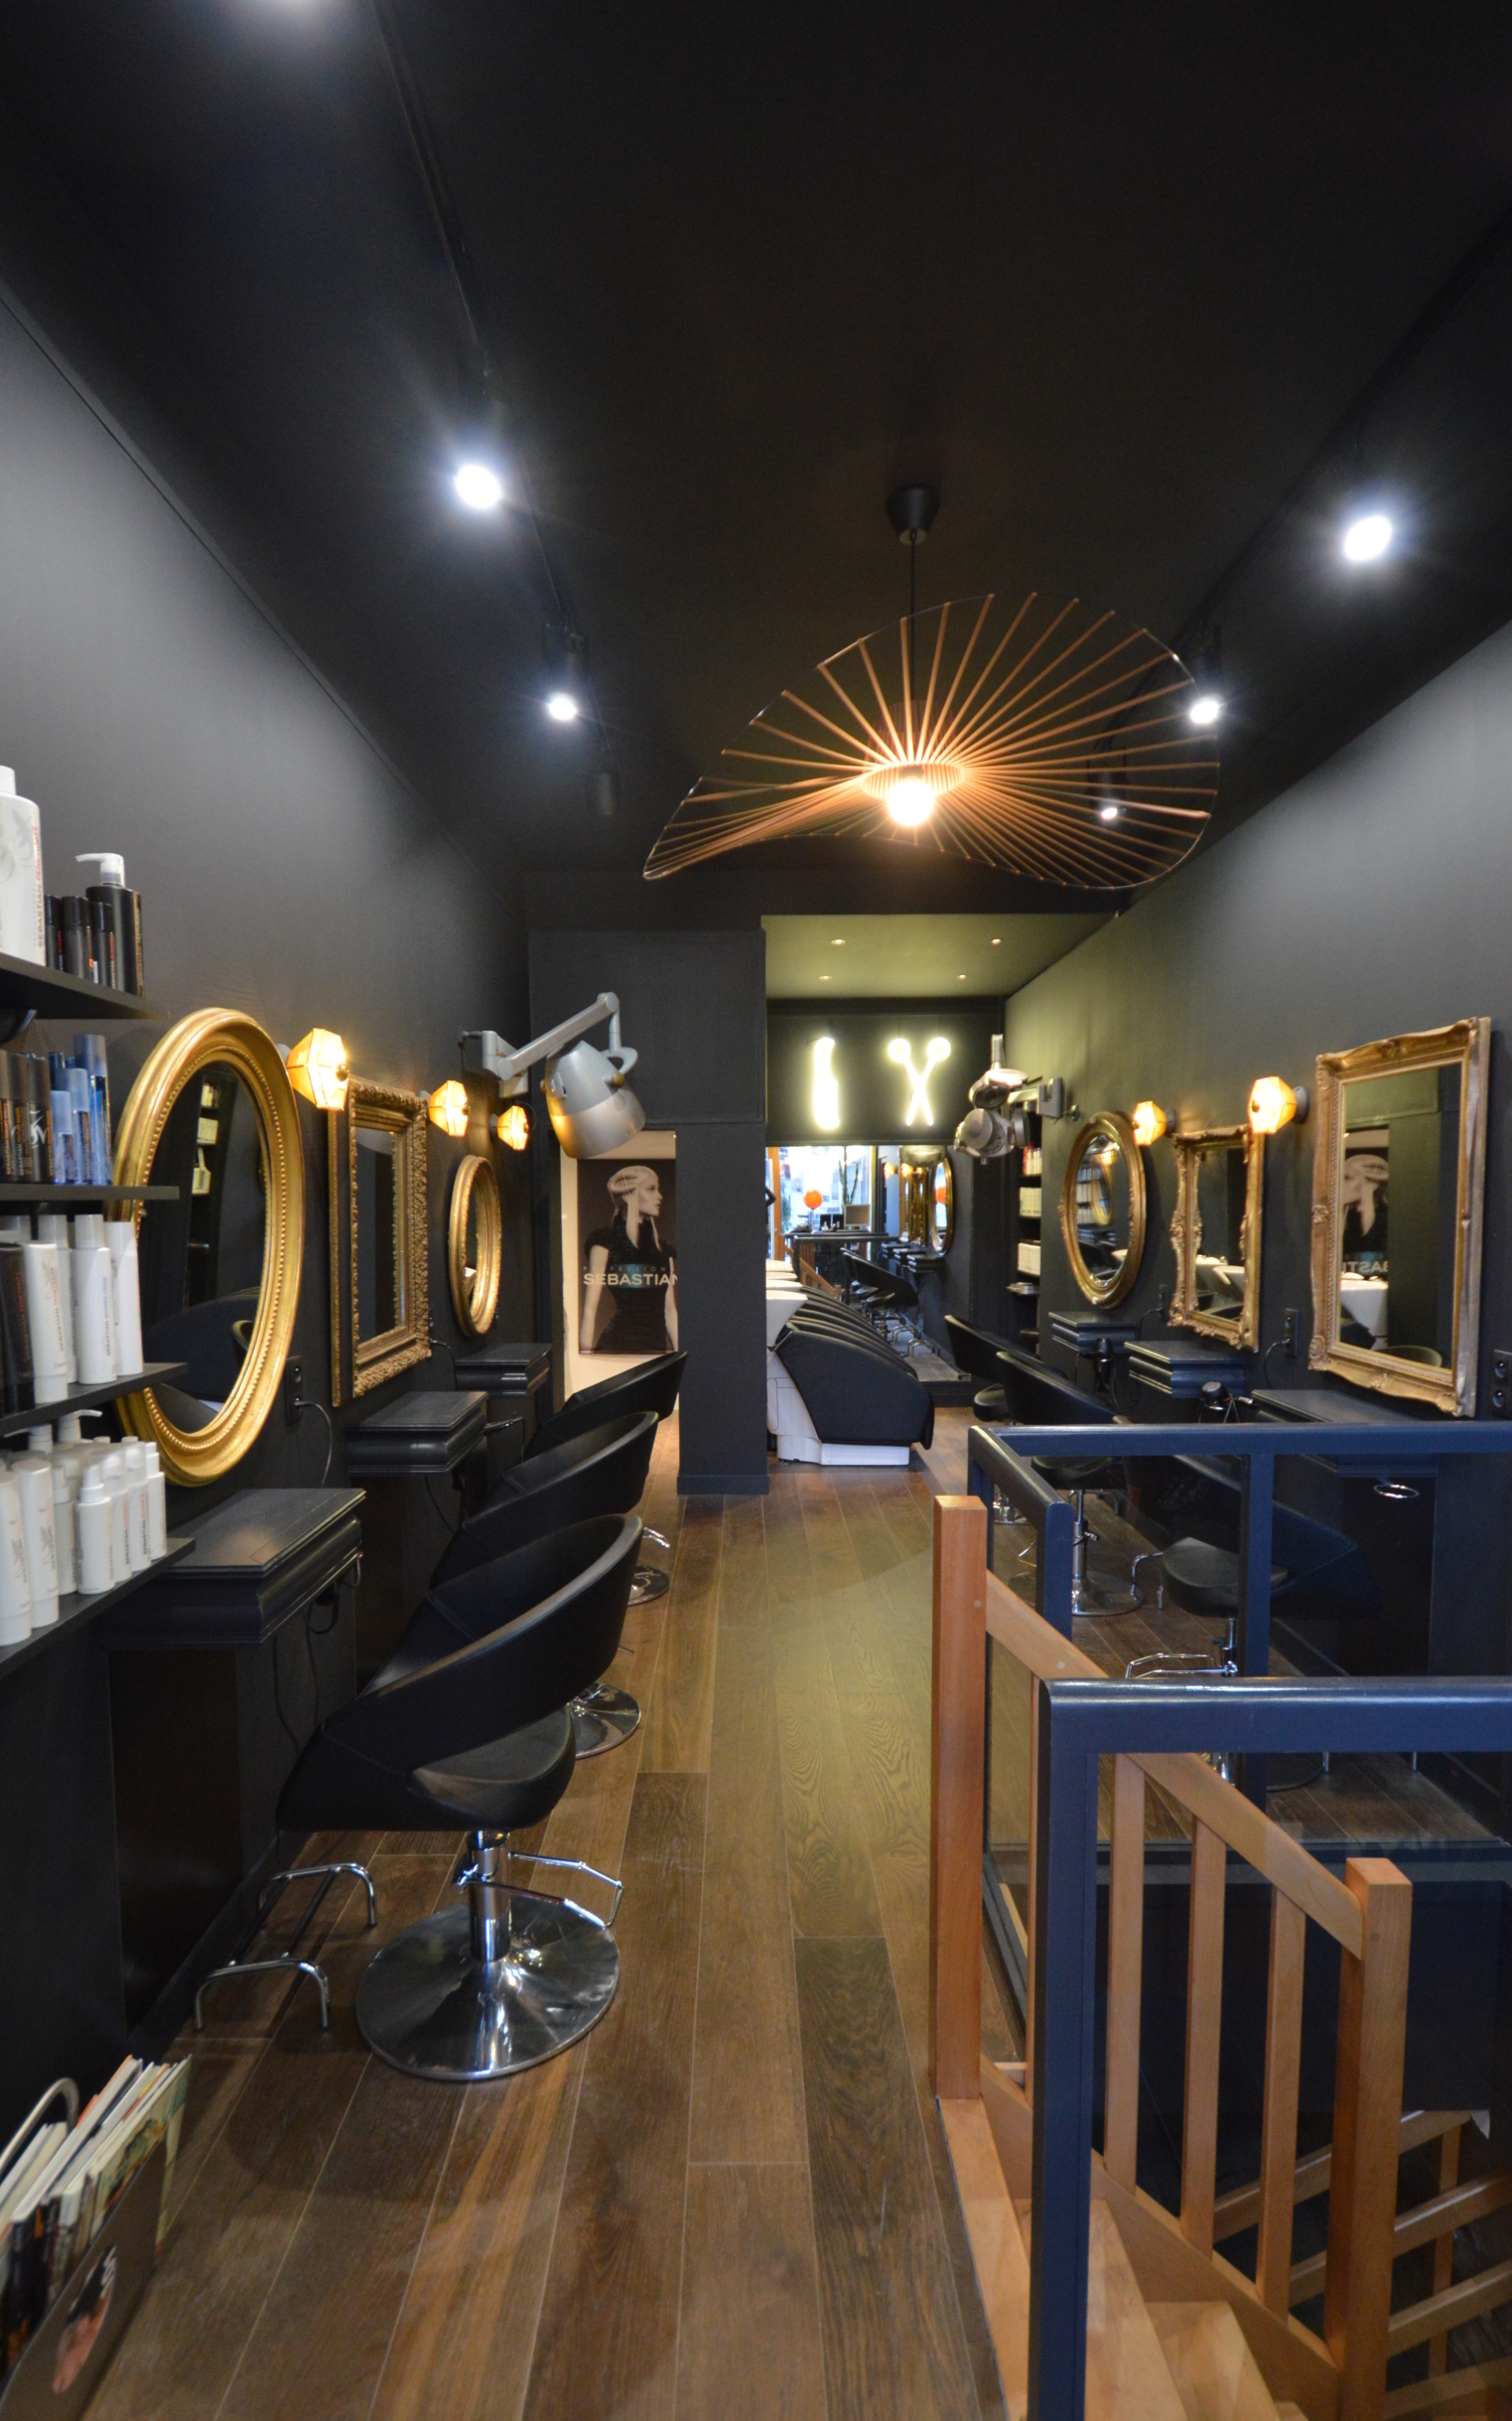 Salon de coiffure sur le style gothique (noir et doré).